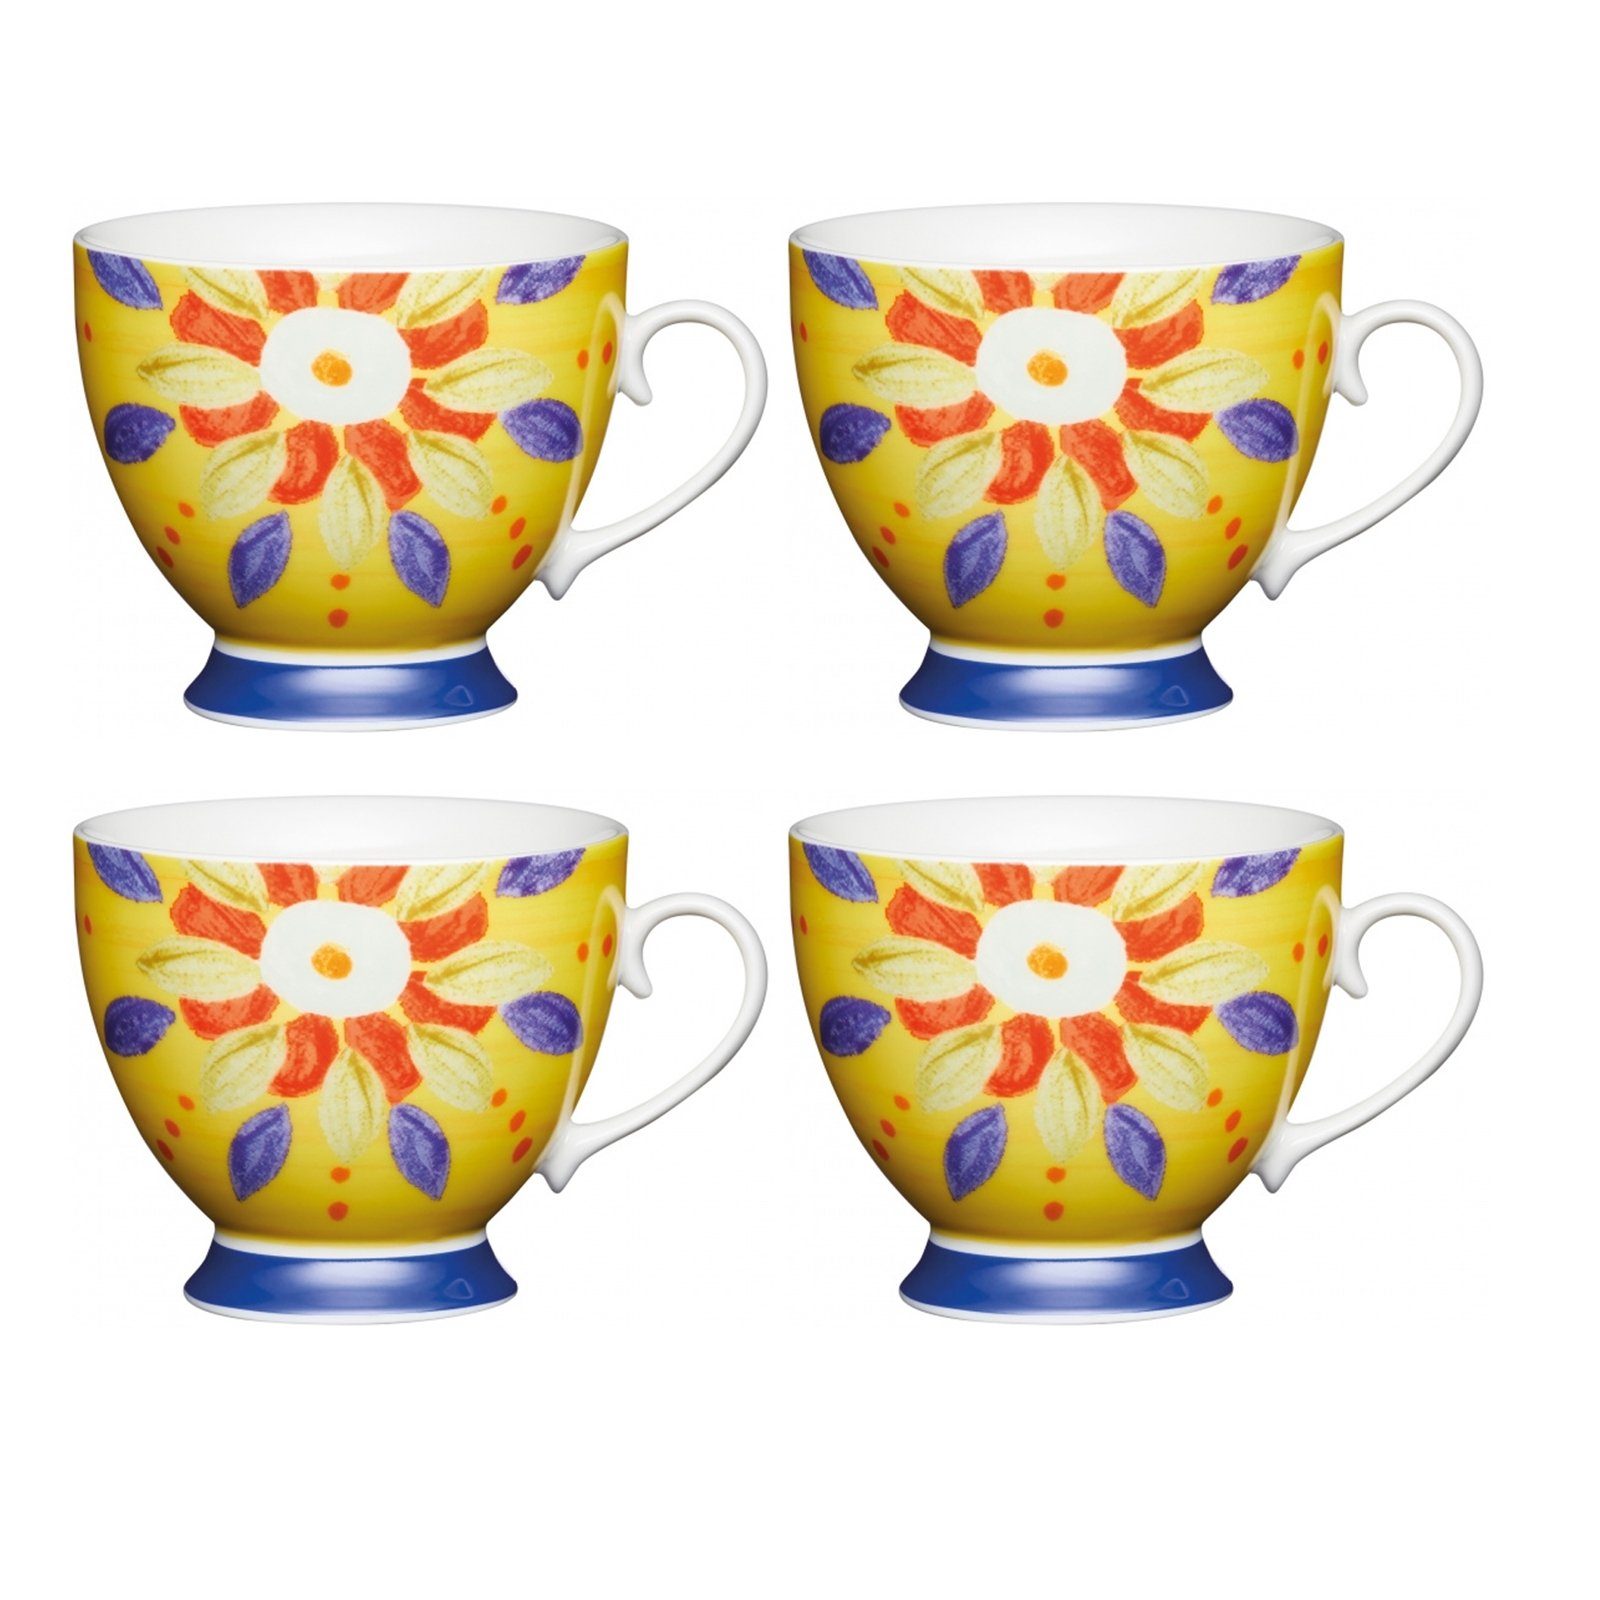 Neuetischkultur Tasse Tassen-Set, 4-teilig, geschwungene Form, Porzellan Marokko Gelb